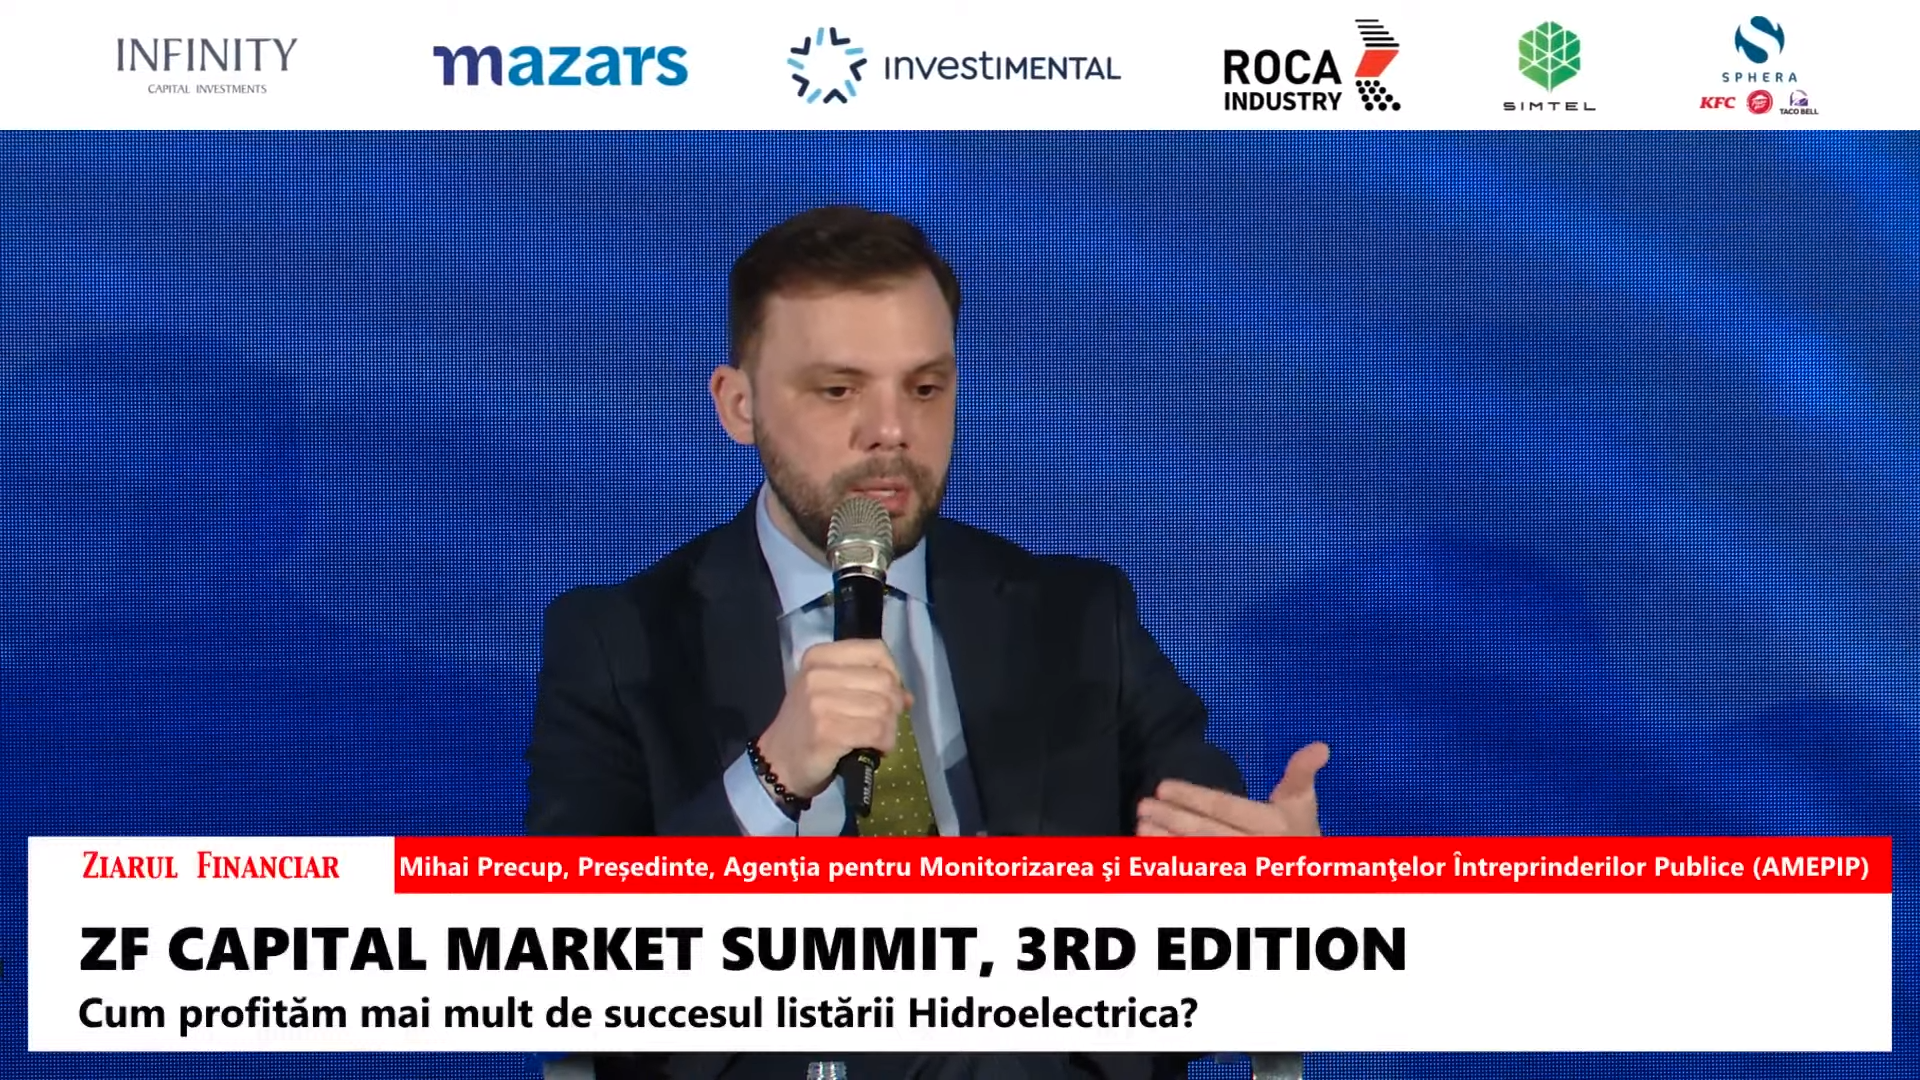 Mihai Precup, preşedintele AMEPIP: Agenţia monitorizează 216 companii, undeva la 7% din economia României, acestea fiind deţinute direct de Guvernul României. În plus, mai monitorizăm încă 1.200 de companii care sunt deţinute de către autorităţile publice locale